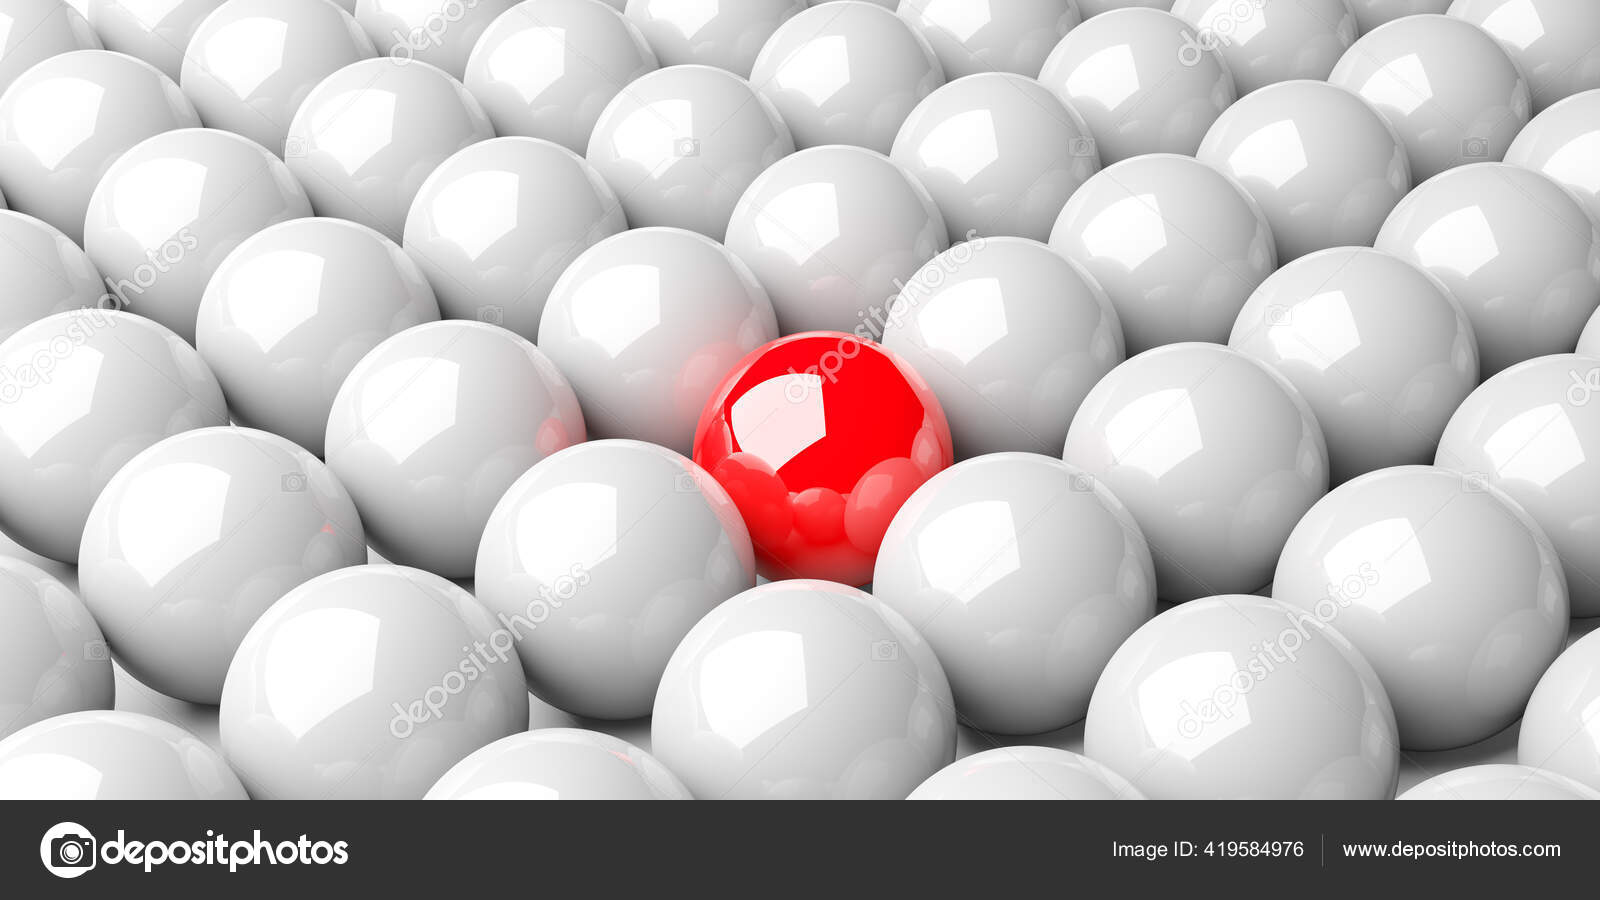 白い背景 チーム リーダーシップまたは個性の概念 3dイラストの上の白い球のグループの真ん中の単一の赤い球 ストック写真 C Shawn Hempel